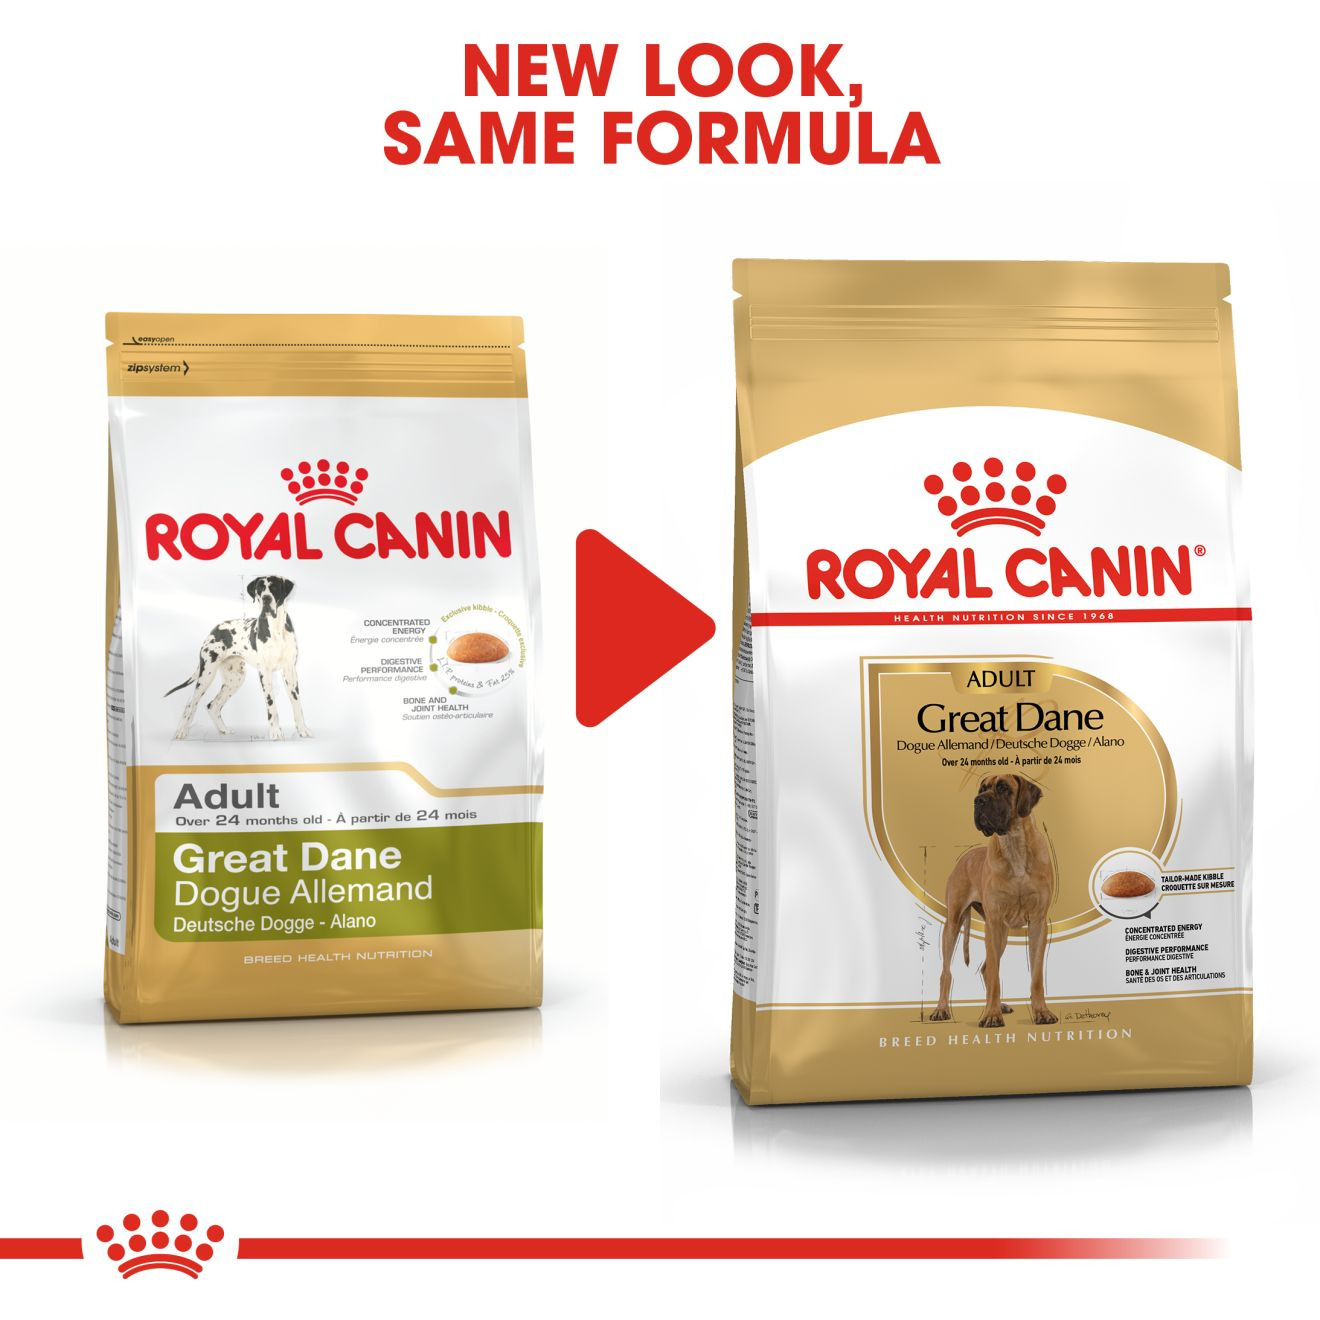 royal canin great dane dog food